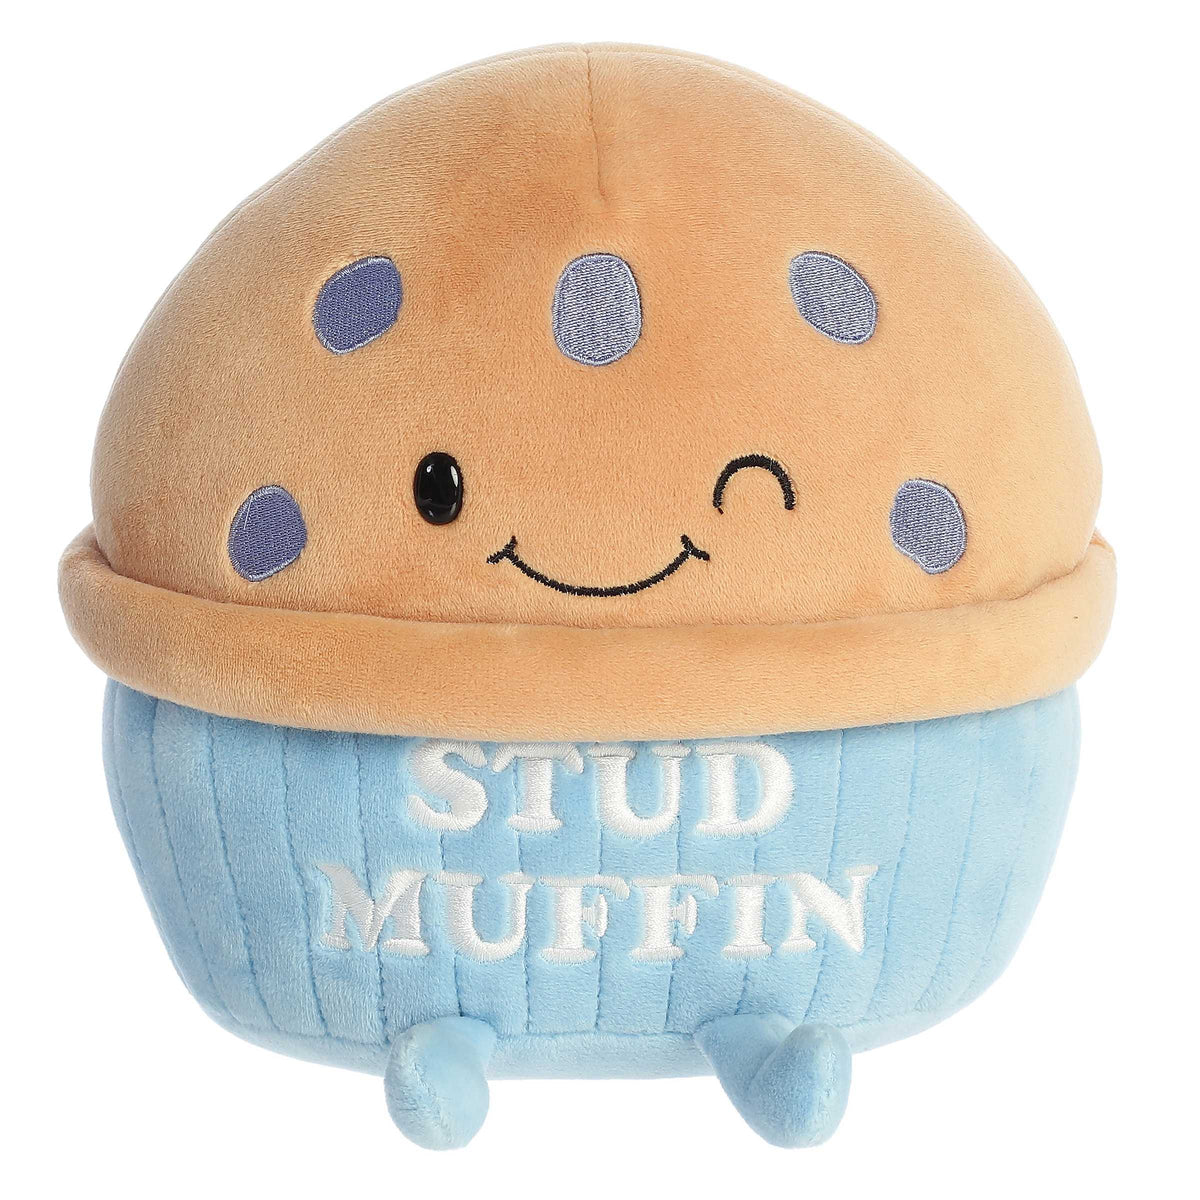 Aurora® - JUST SAYIN'™ - 8.5" Stud Muffin™